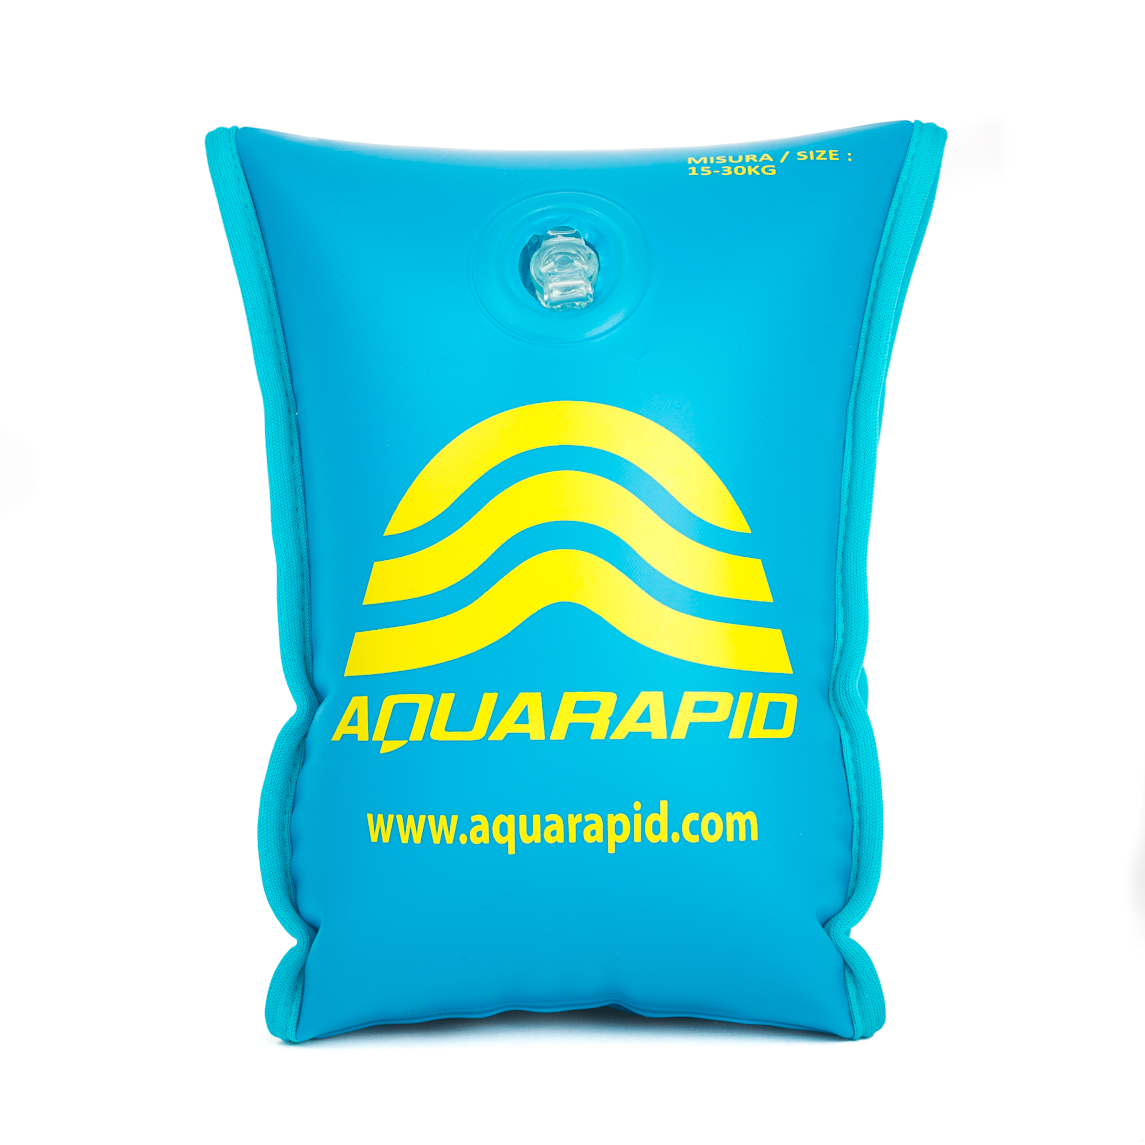 Brassards de natation Aquarapid